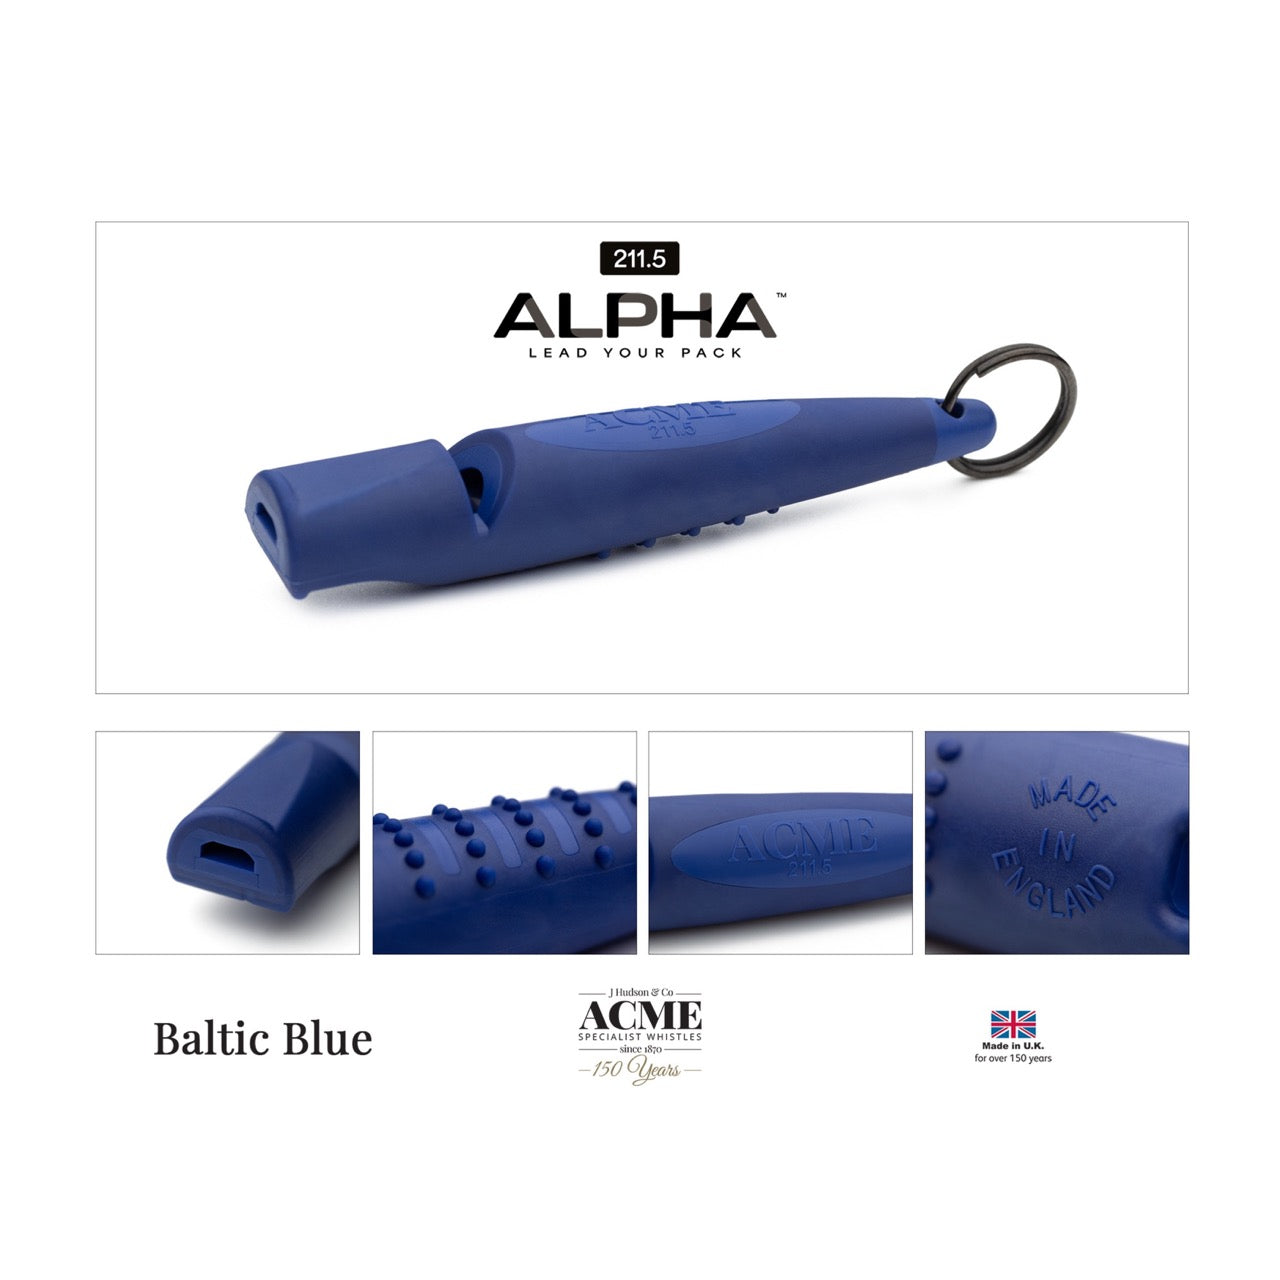 Acme ALPHA beste hondenfluit toonhoogte 211.5 baltic blue